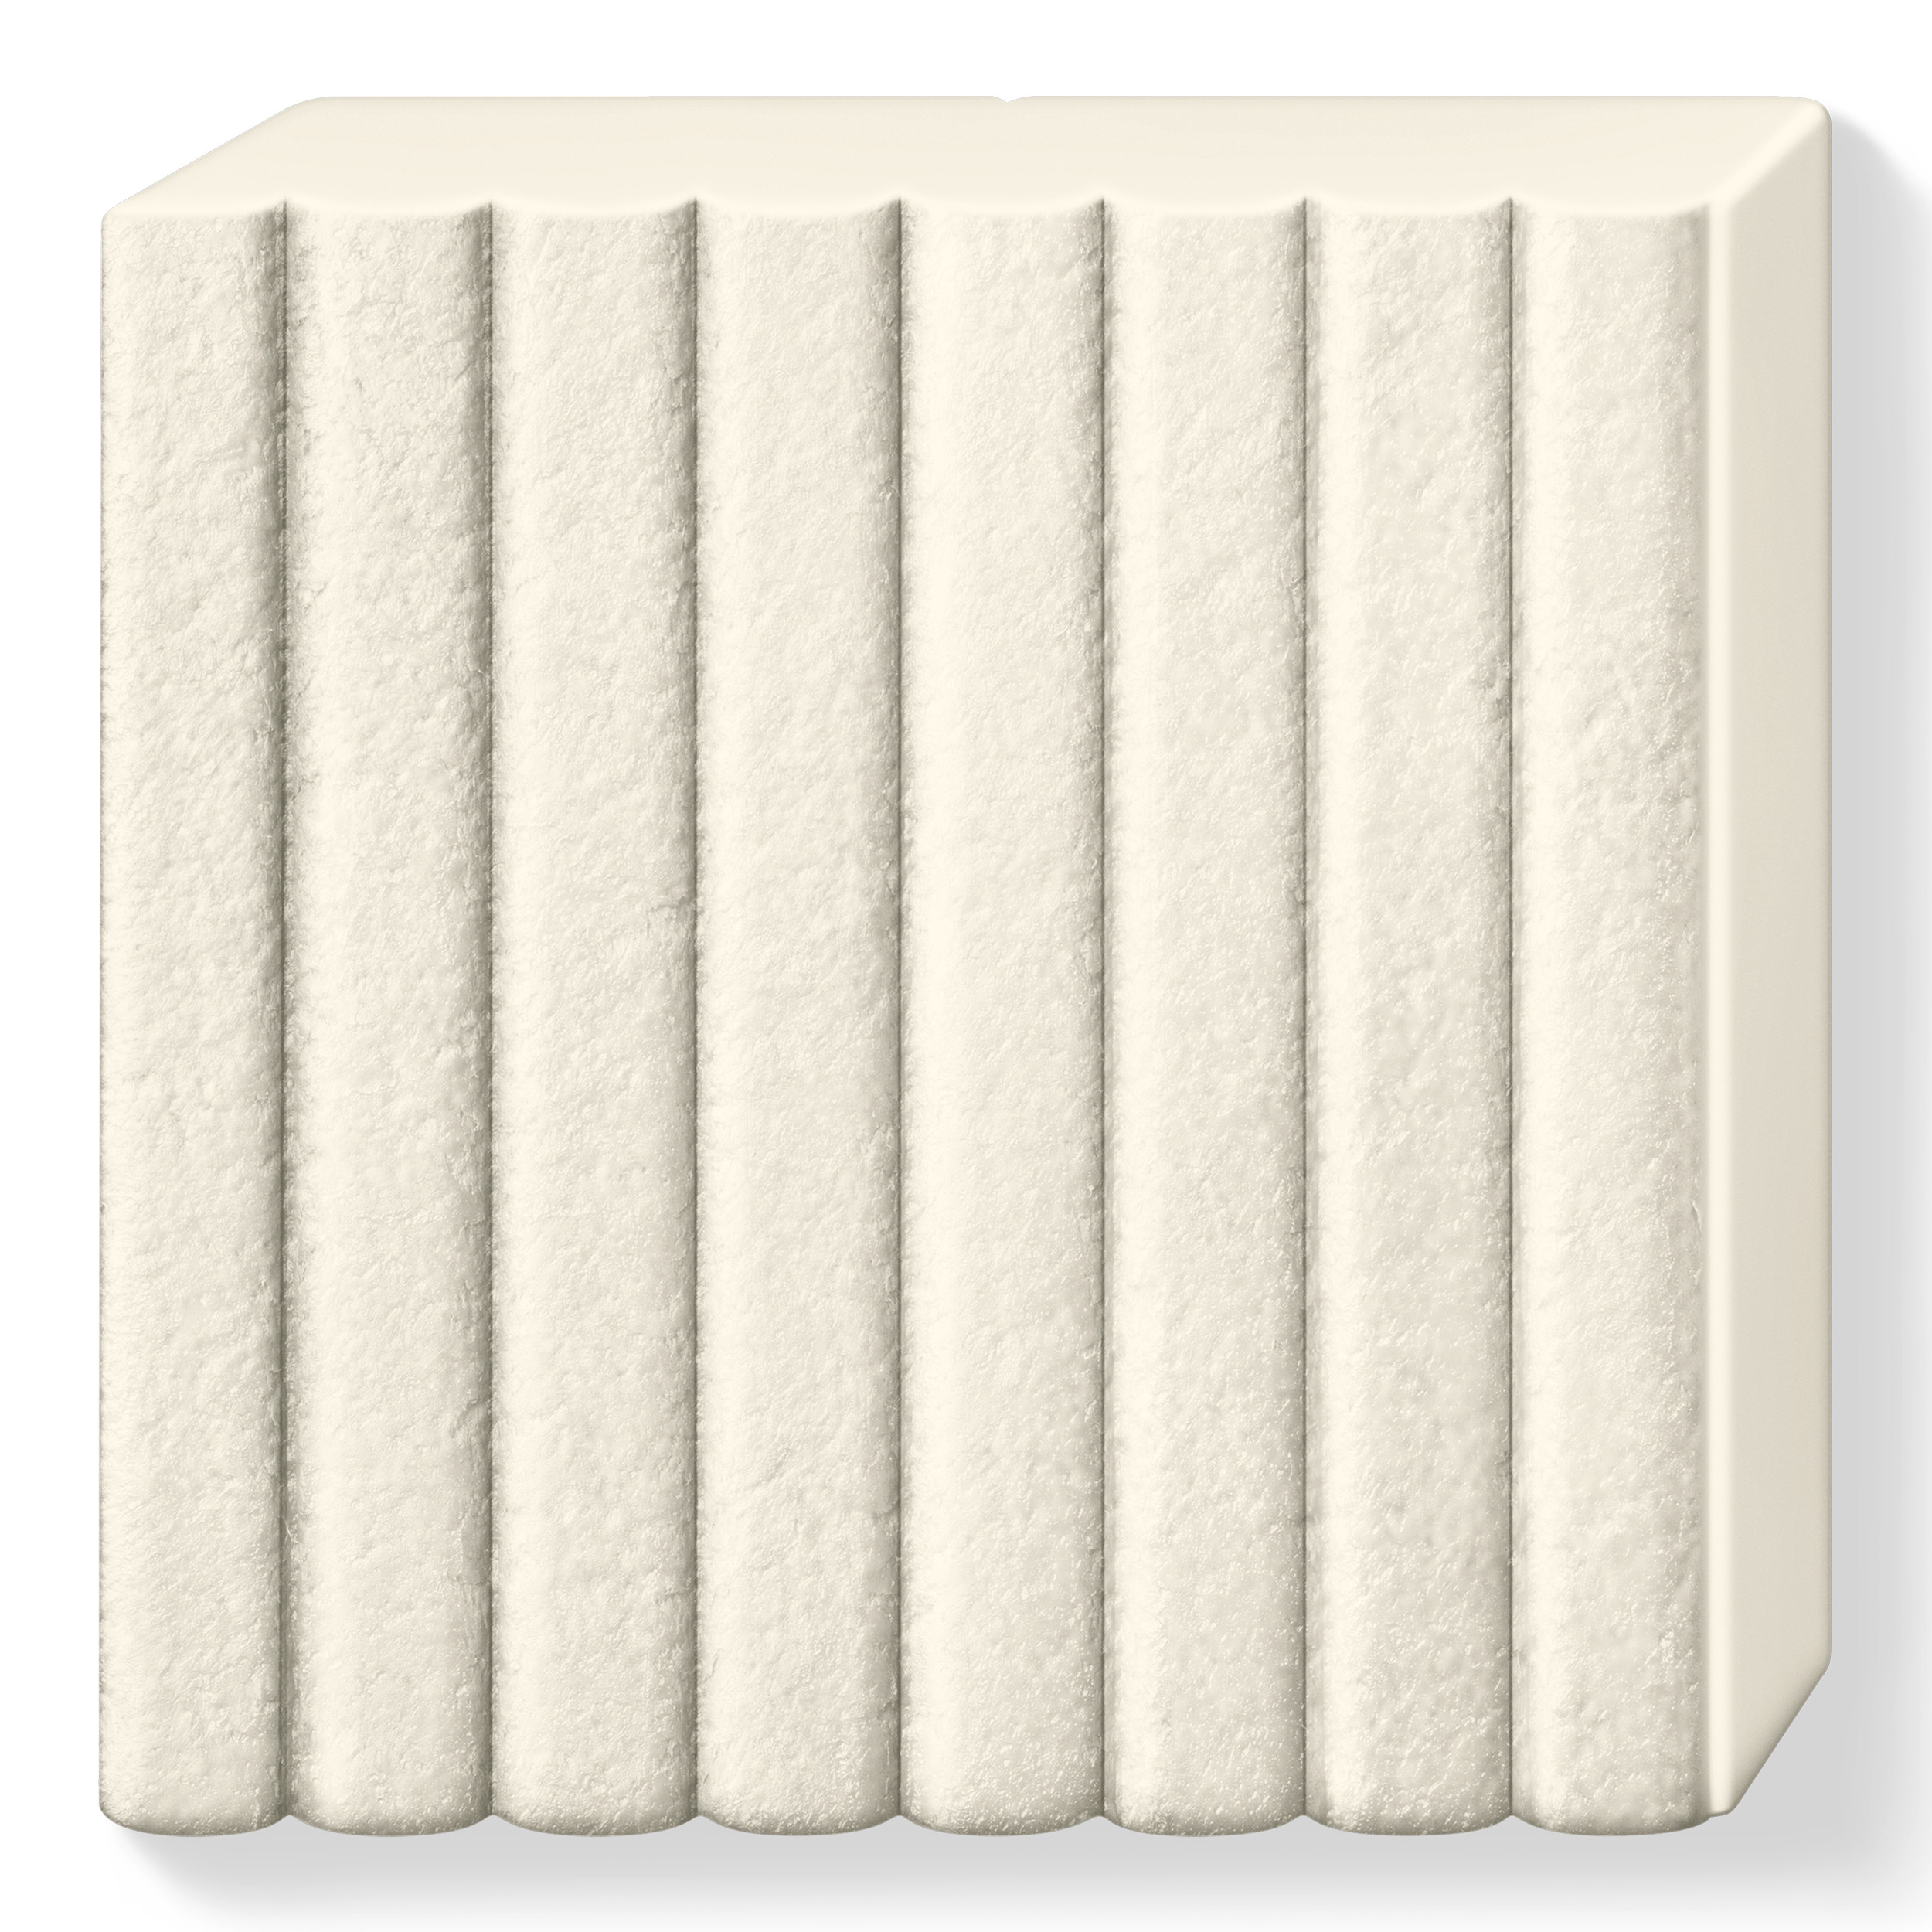 8010 029 FIMO Leather Effect Ivory ler læder effekt hvid elfenbenshvid